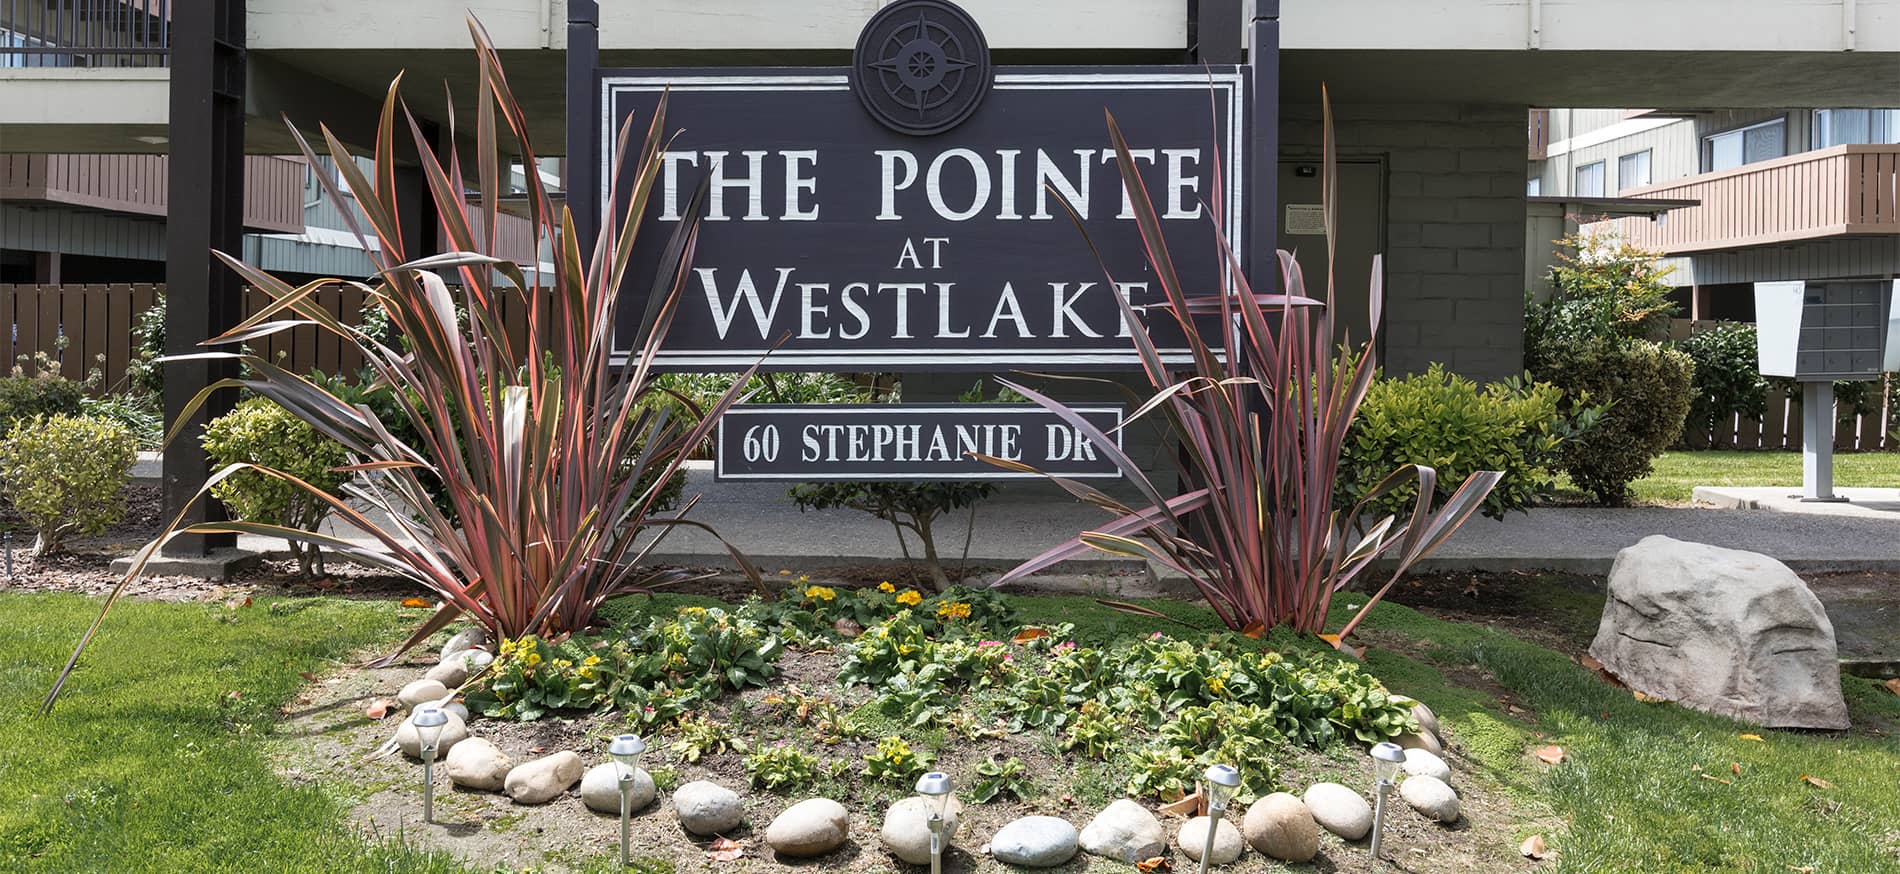 Pointe at Westlake Sign